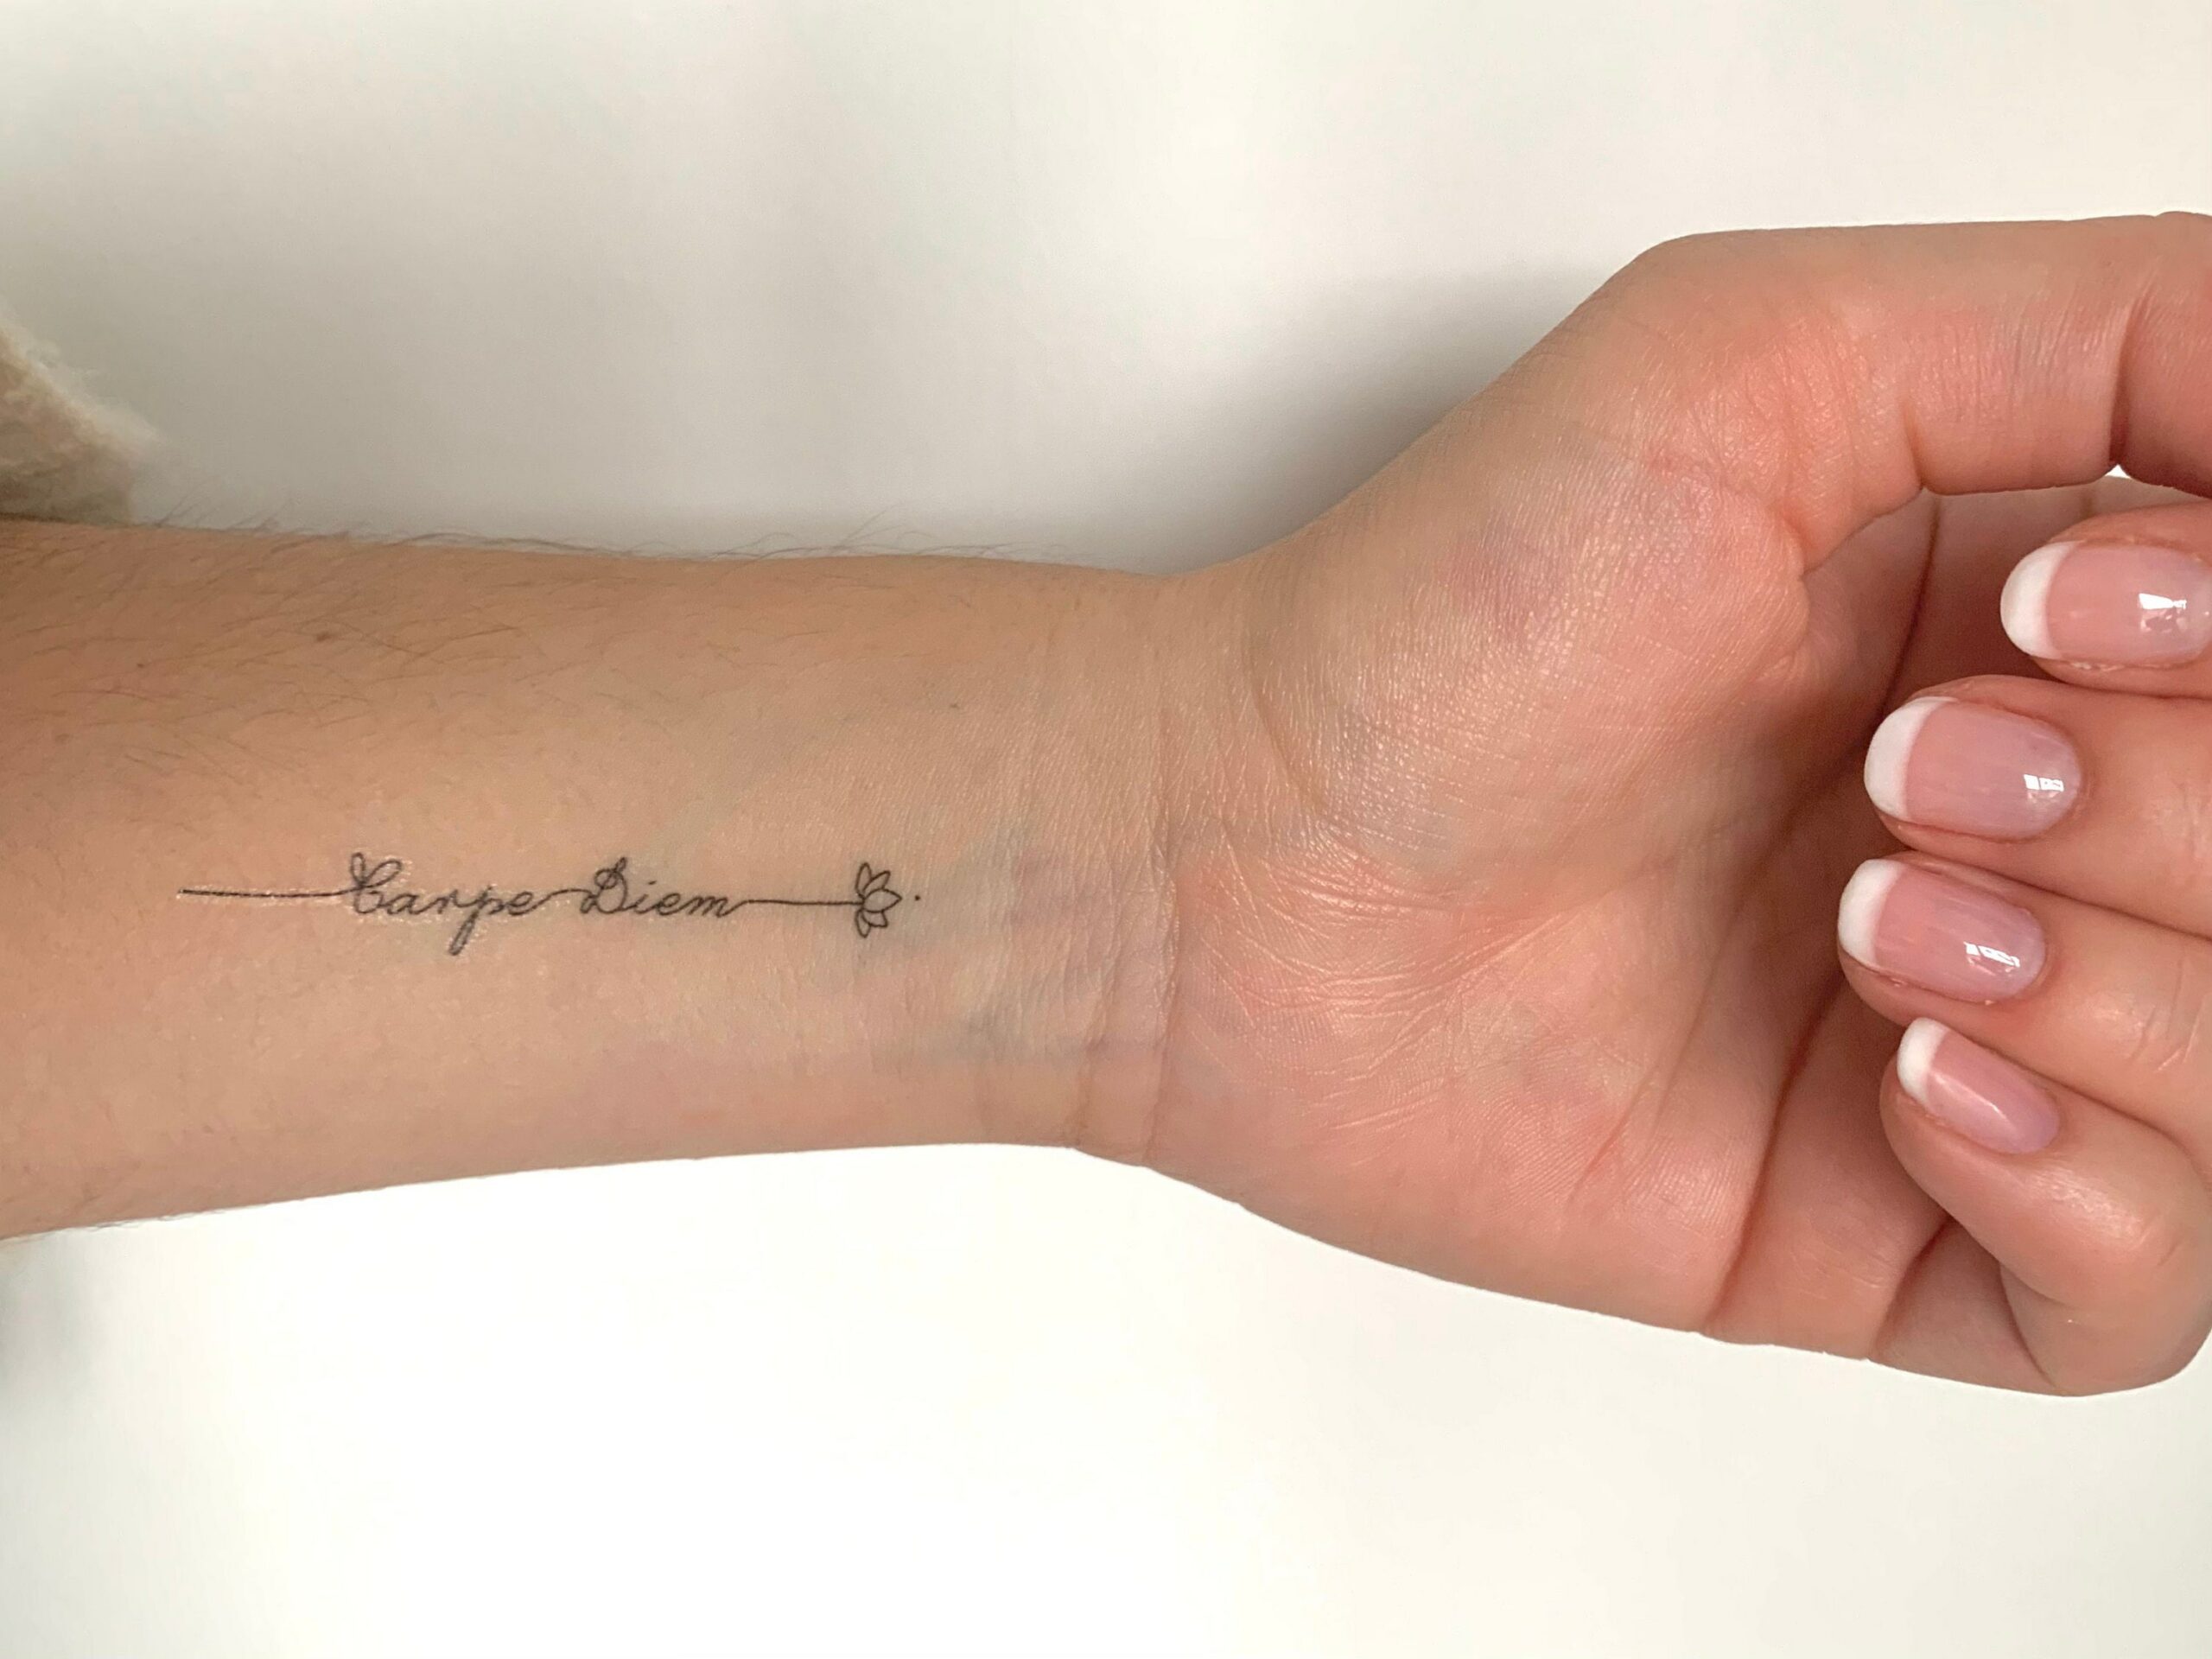 Tatuajes carpe diem significado y origen